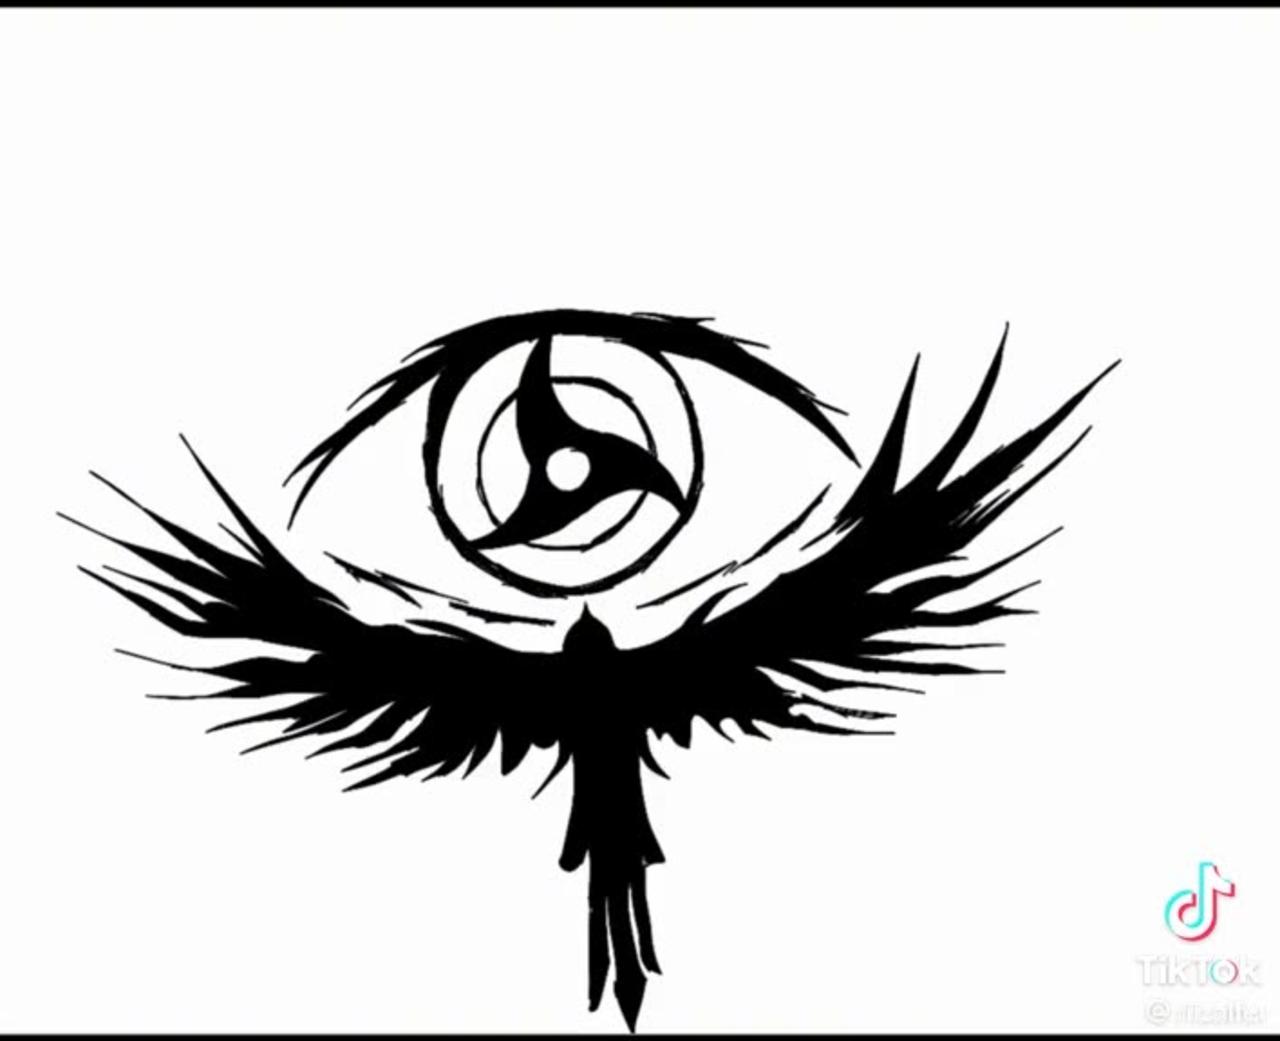 One of the powerfull mangekyo sharingan | Uchiha Itachi eyes